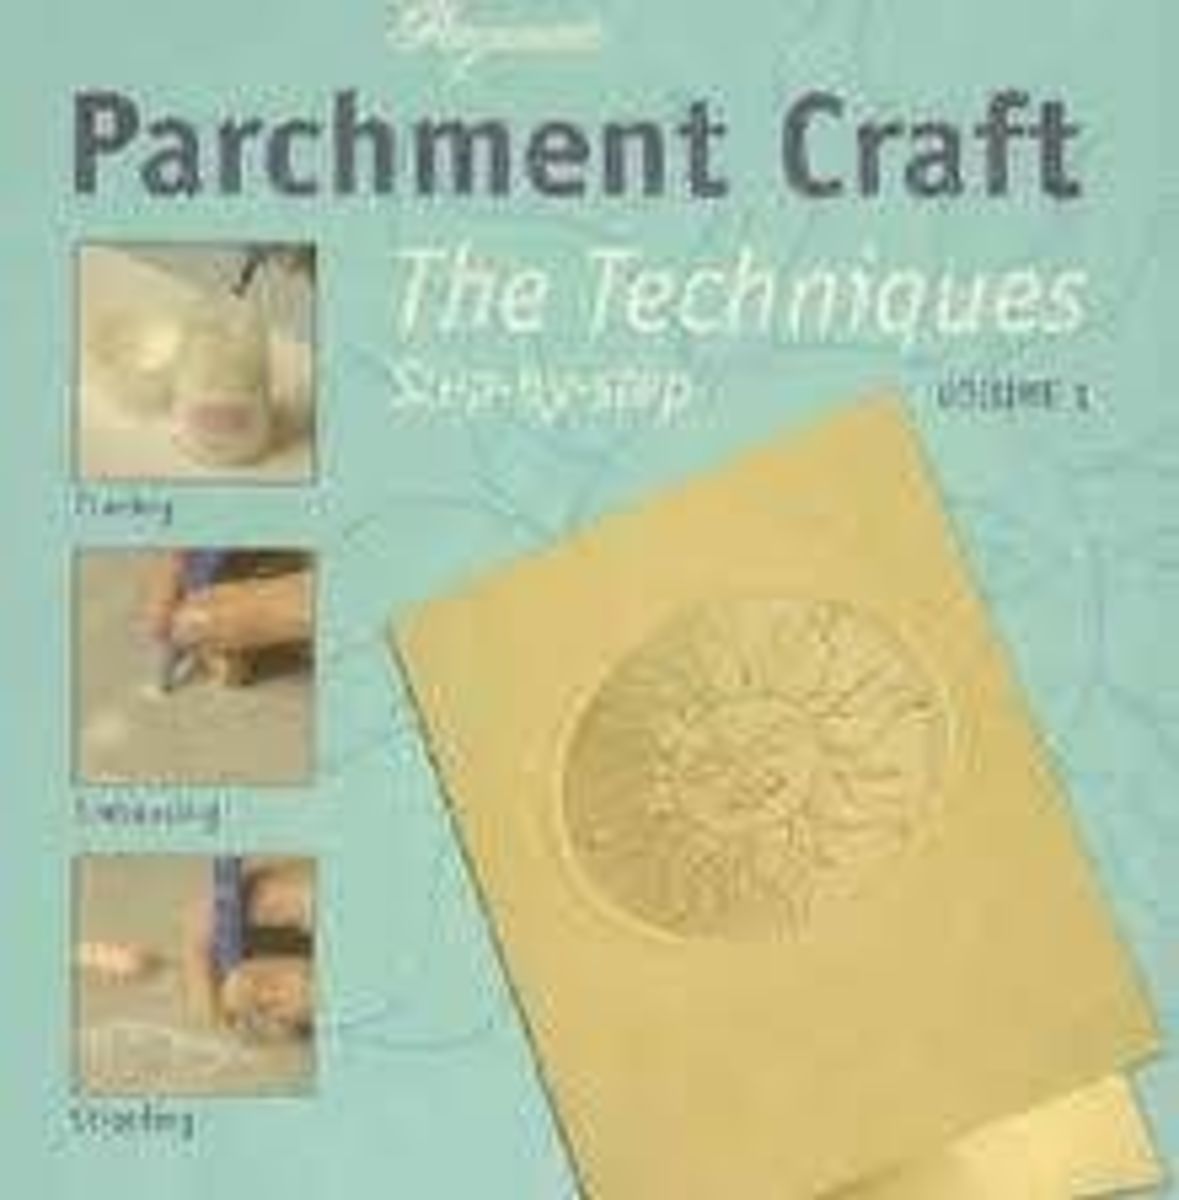 parchment craft books